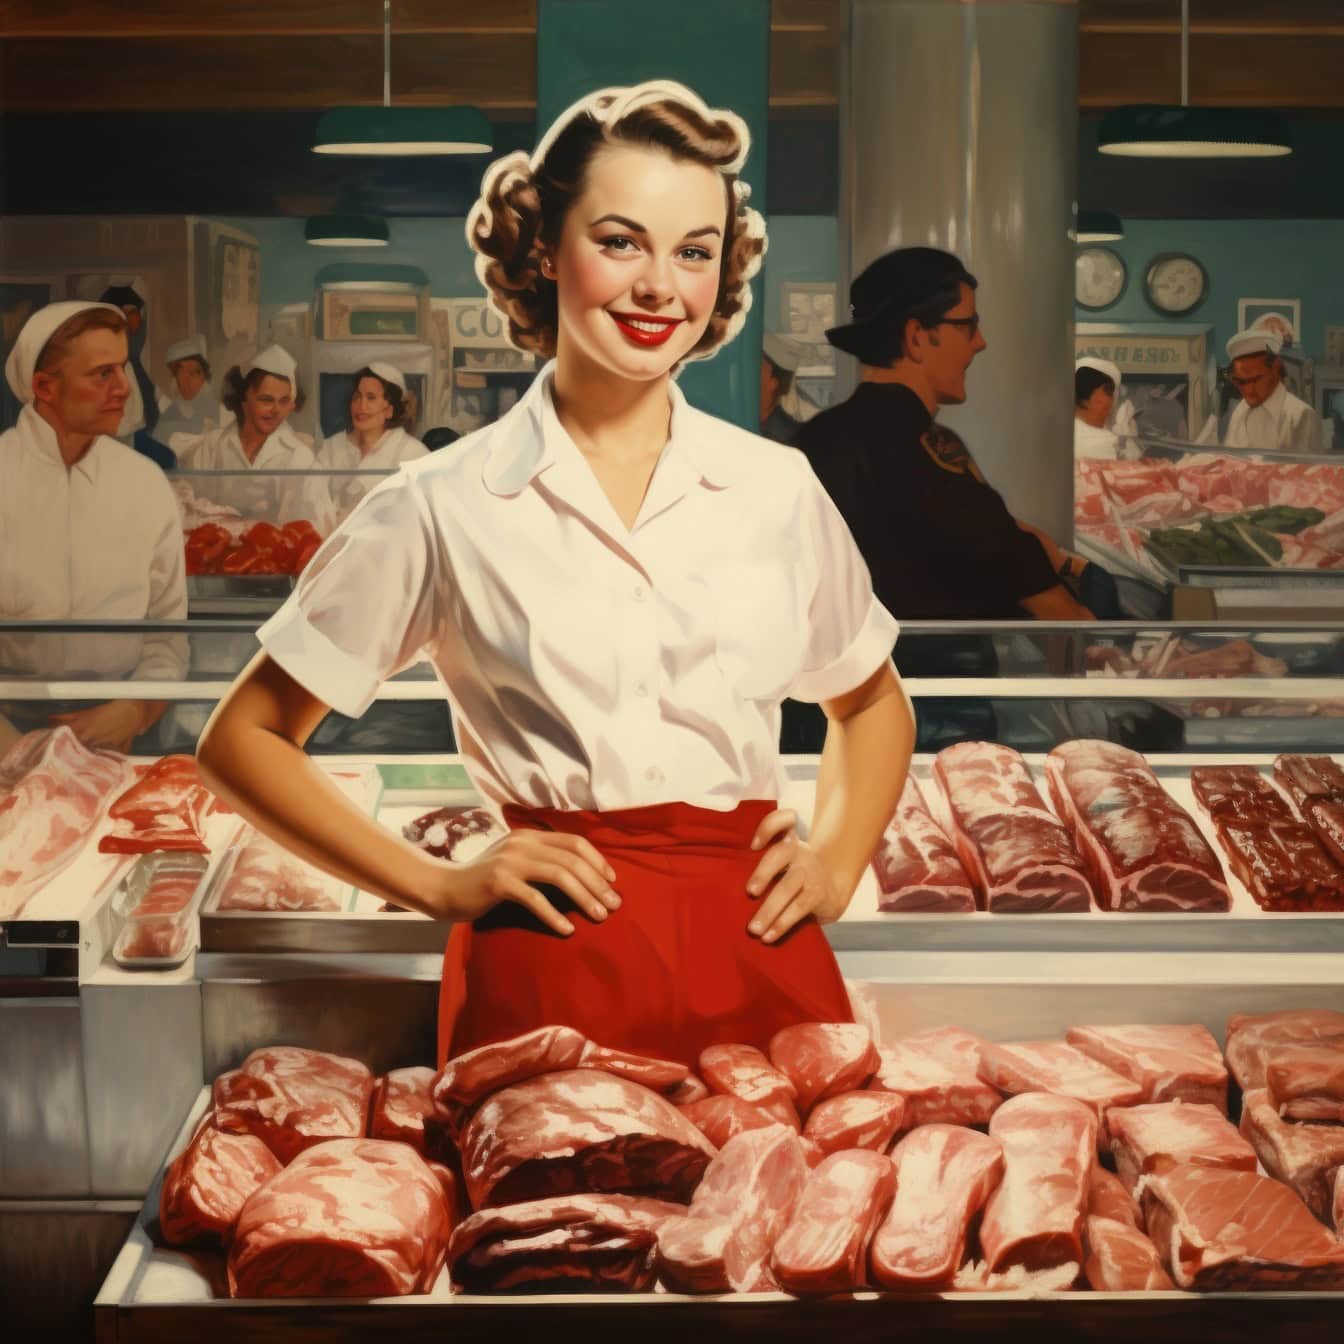 Une boucherie debout devant de la viande dans une boucherie ou un supermarché, une illustration dans le style des années 1960